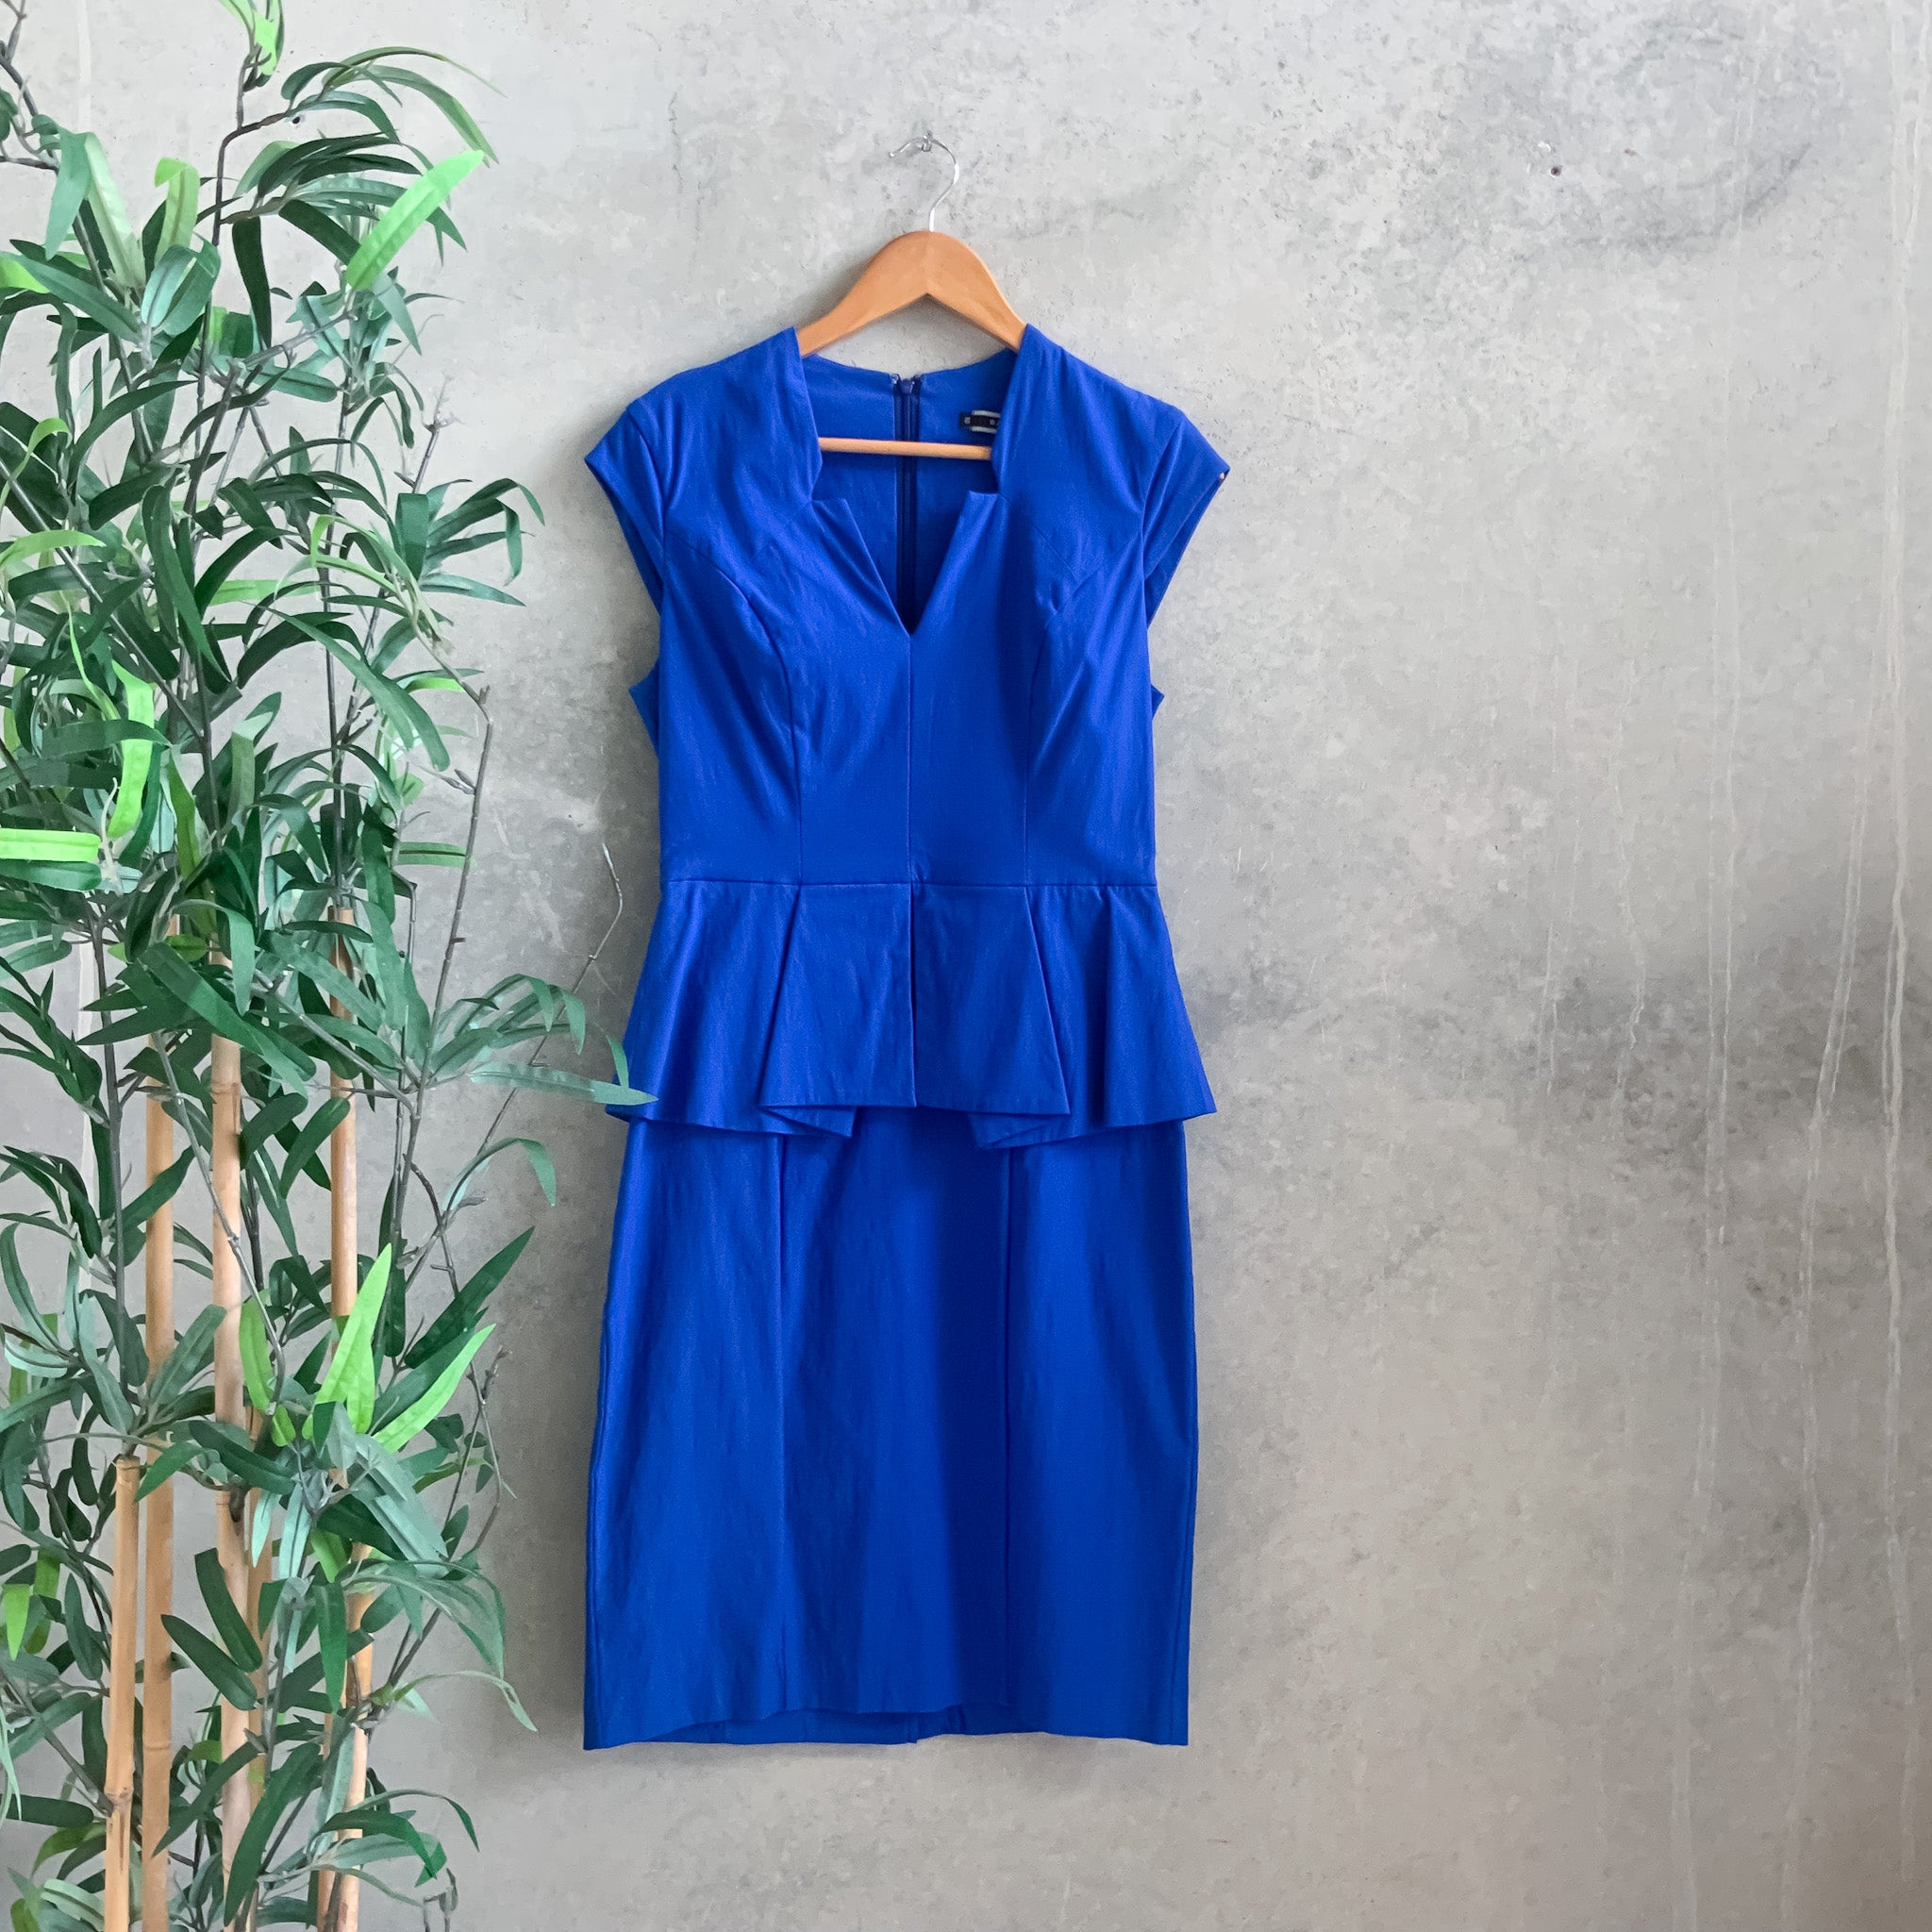 BASQUE Cobalt Blue Structured Peplum Pencil Dress - Size 10